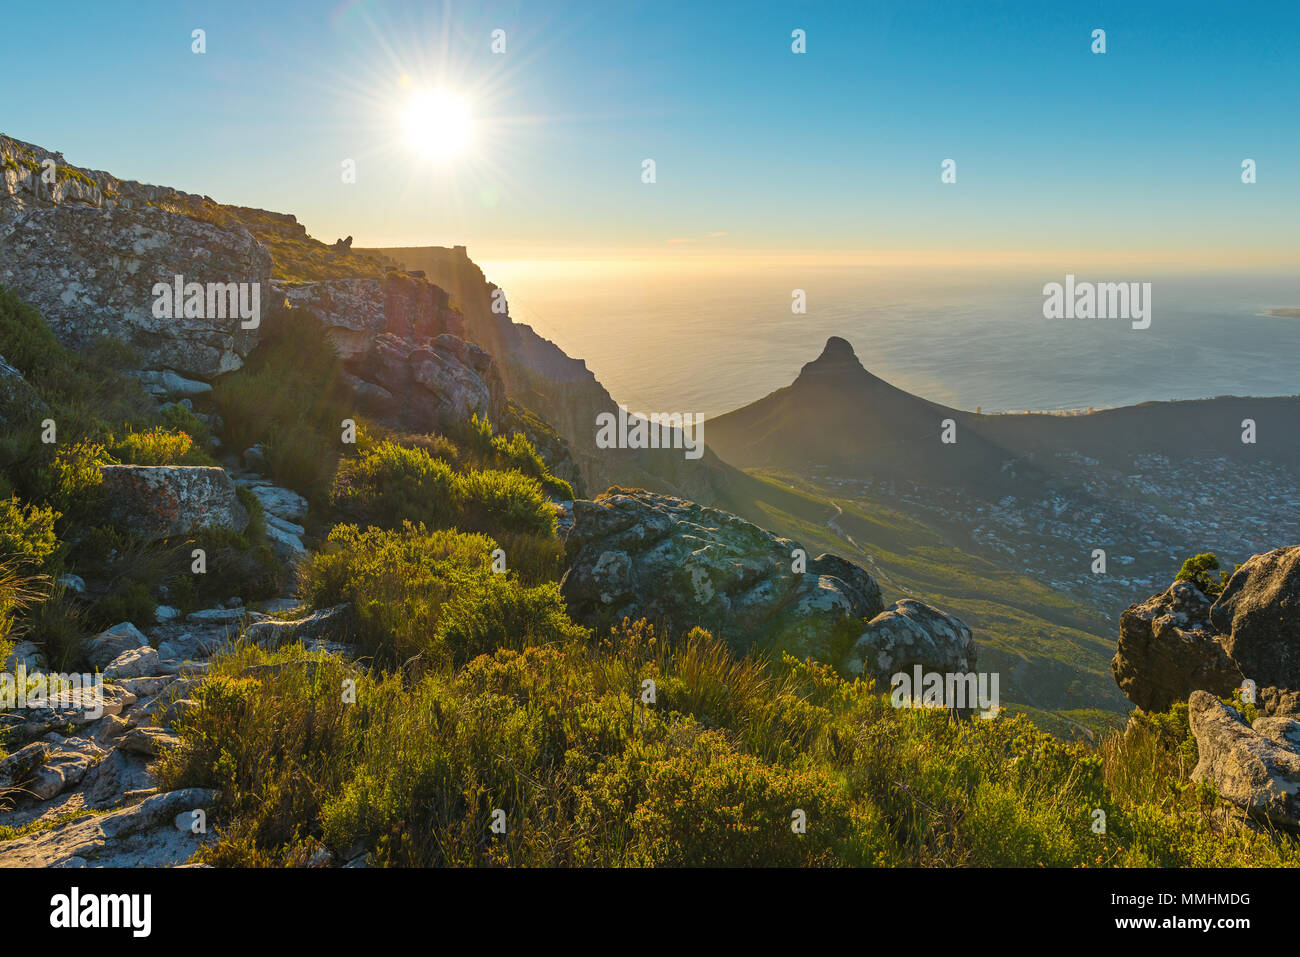 Sunset Landschaft mit Sonnenstrahl aus Cape Town City und Lions Head Mountain Peak bei Sonnenuntergang vom Table Mountain National Park gesehen, Südafrika. Stockfoto